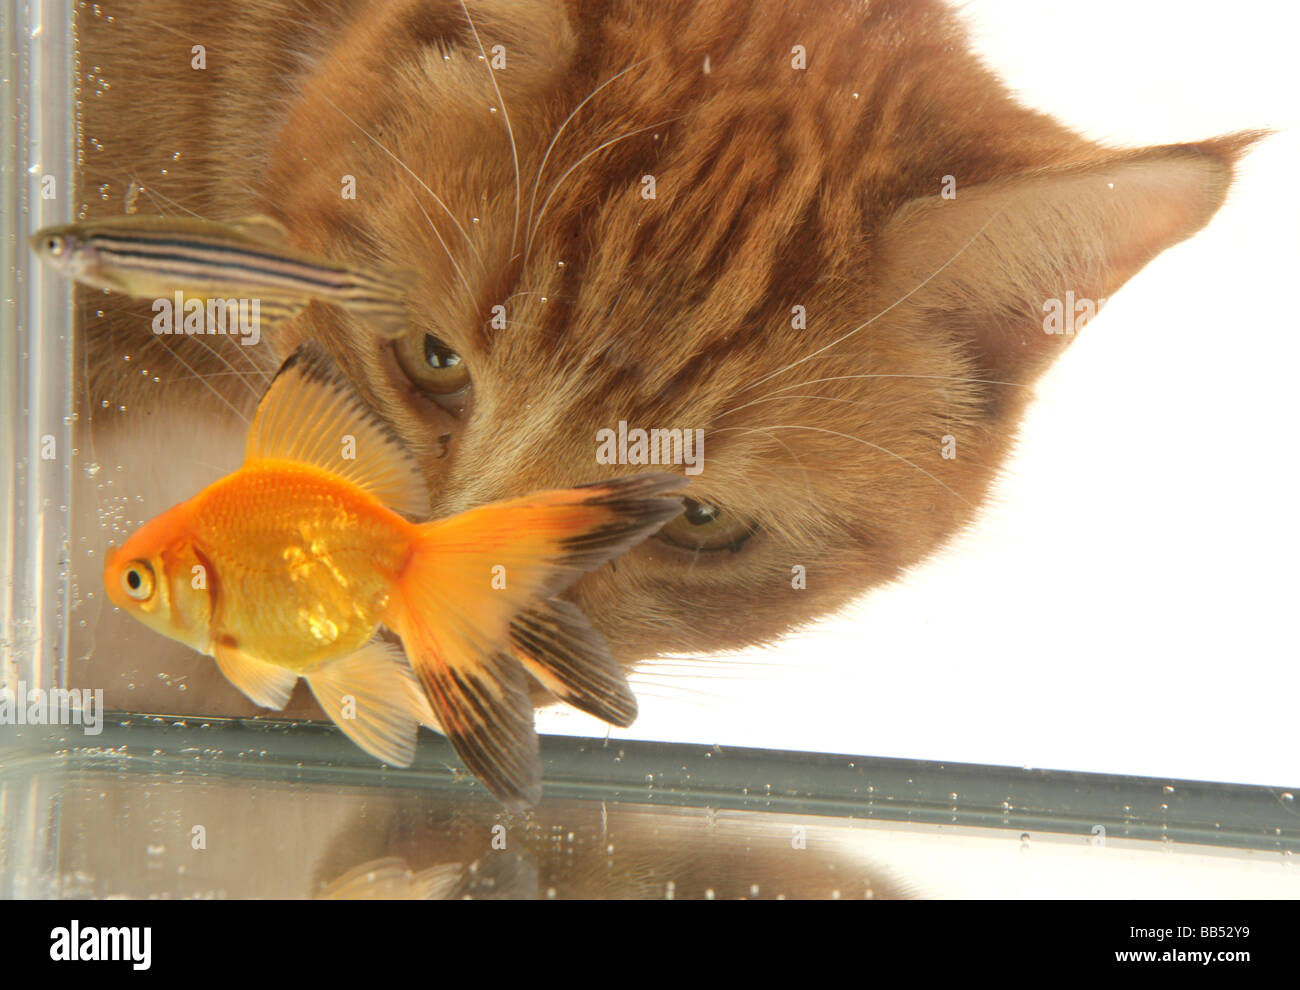 Le gingembre cat looking at goldfish fantail Potrait Studio Banque D'Images